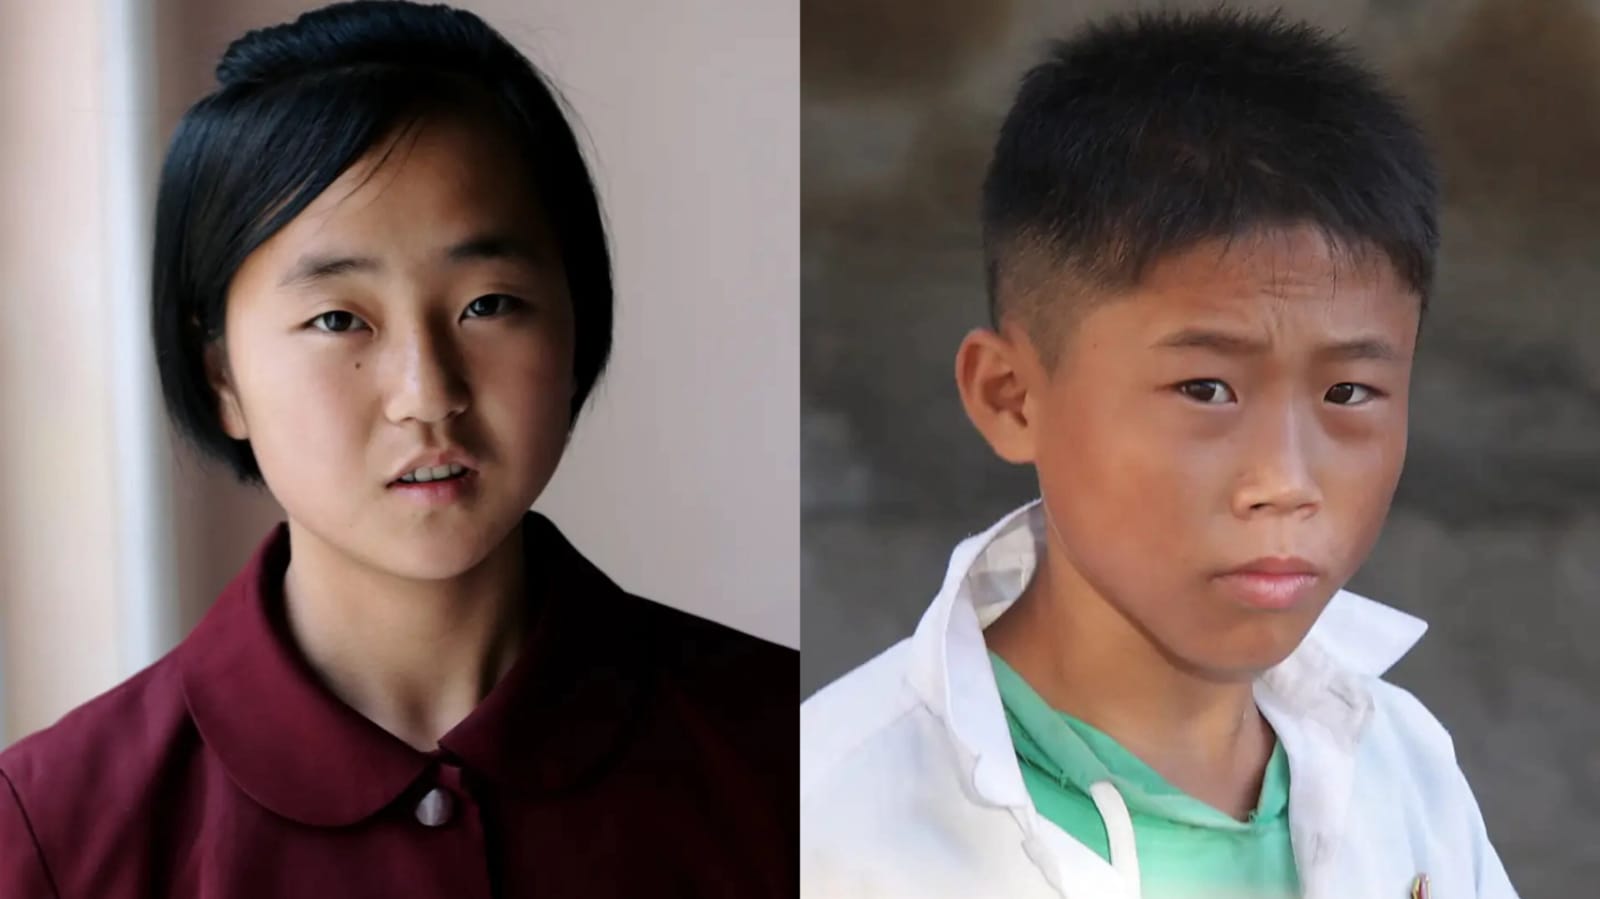 Coreia do Norte executa adolescentes por distribuir filmes estrangeiros